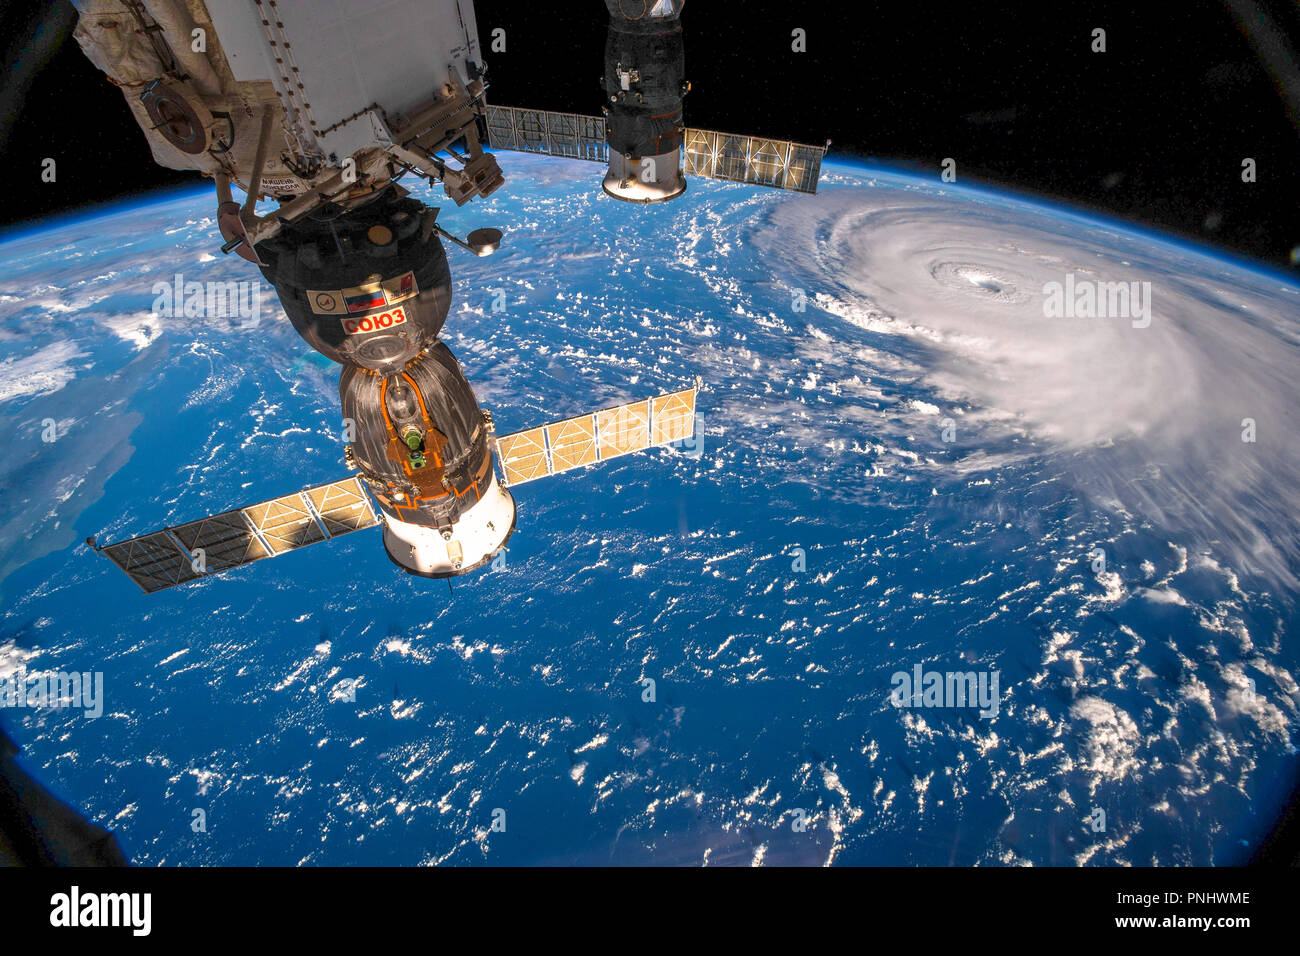 L'uragano Florence visto dallo spazio dalla ISS ( Stazione Spaziale Internazionale). Questa immagine è una dispensa della NASA. Foto Stock